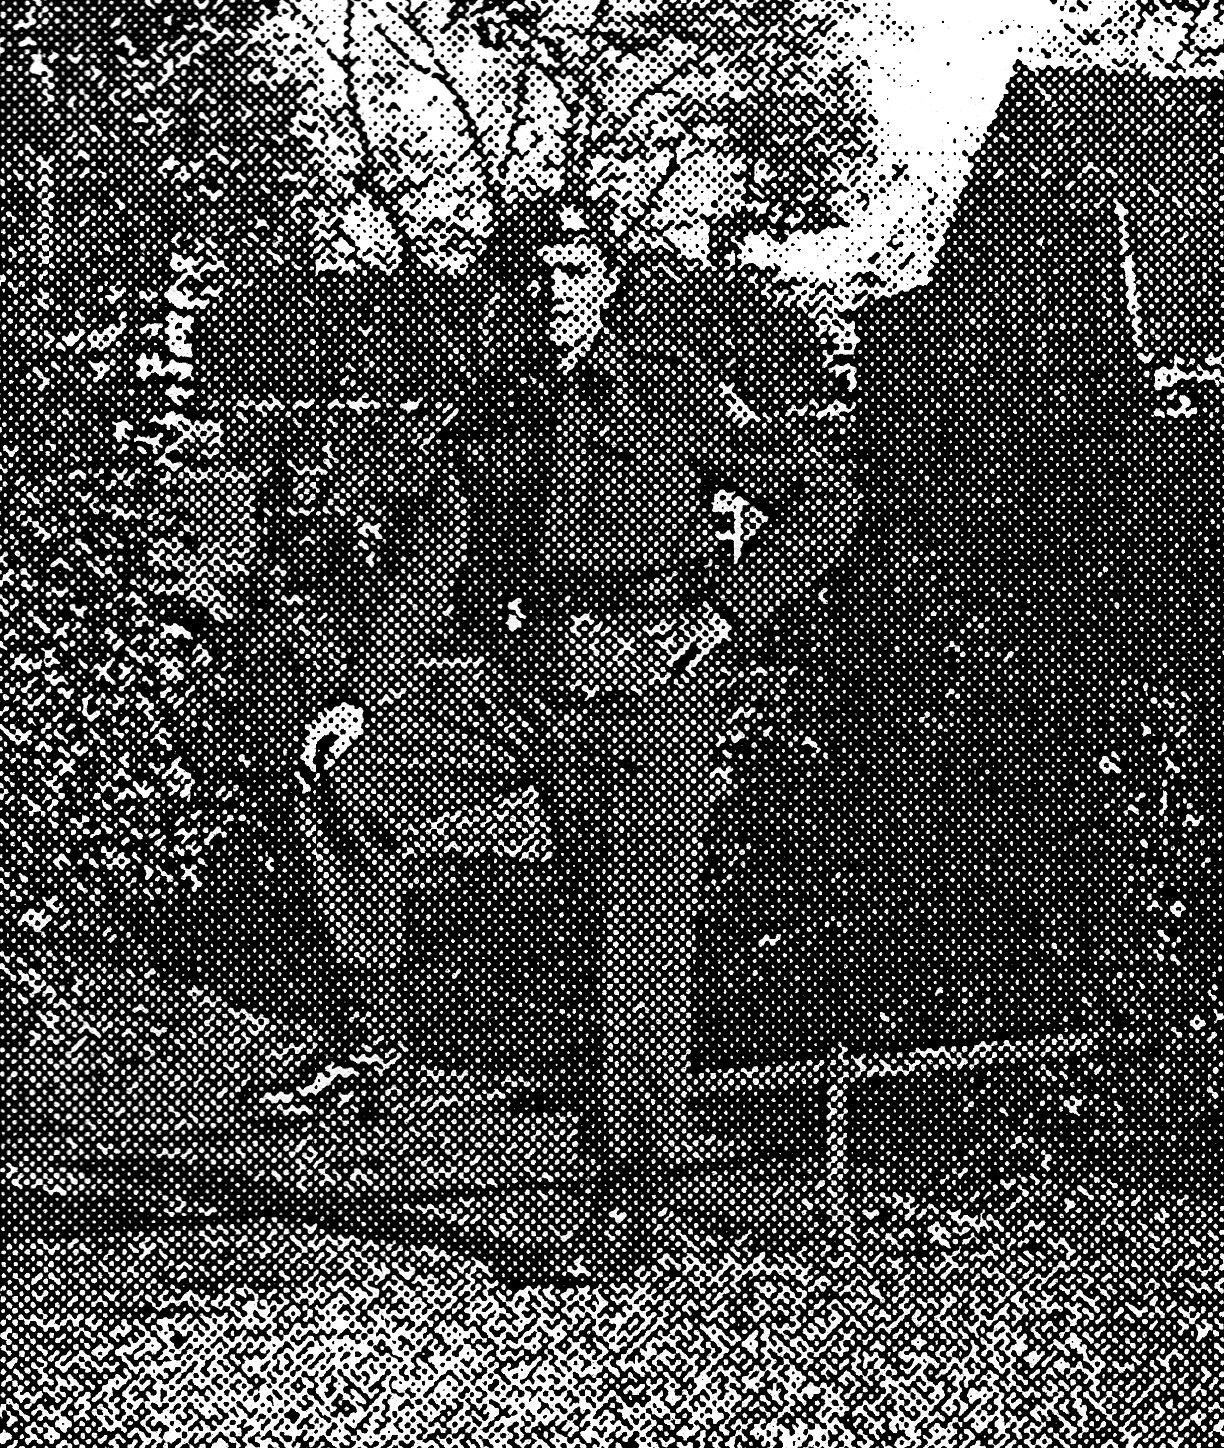 John Marin in battle dress uniform standing in Doorn for a portrait